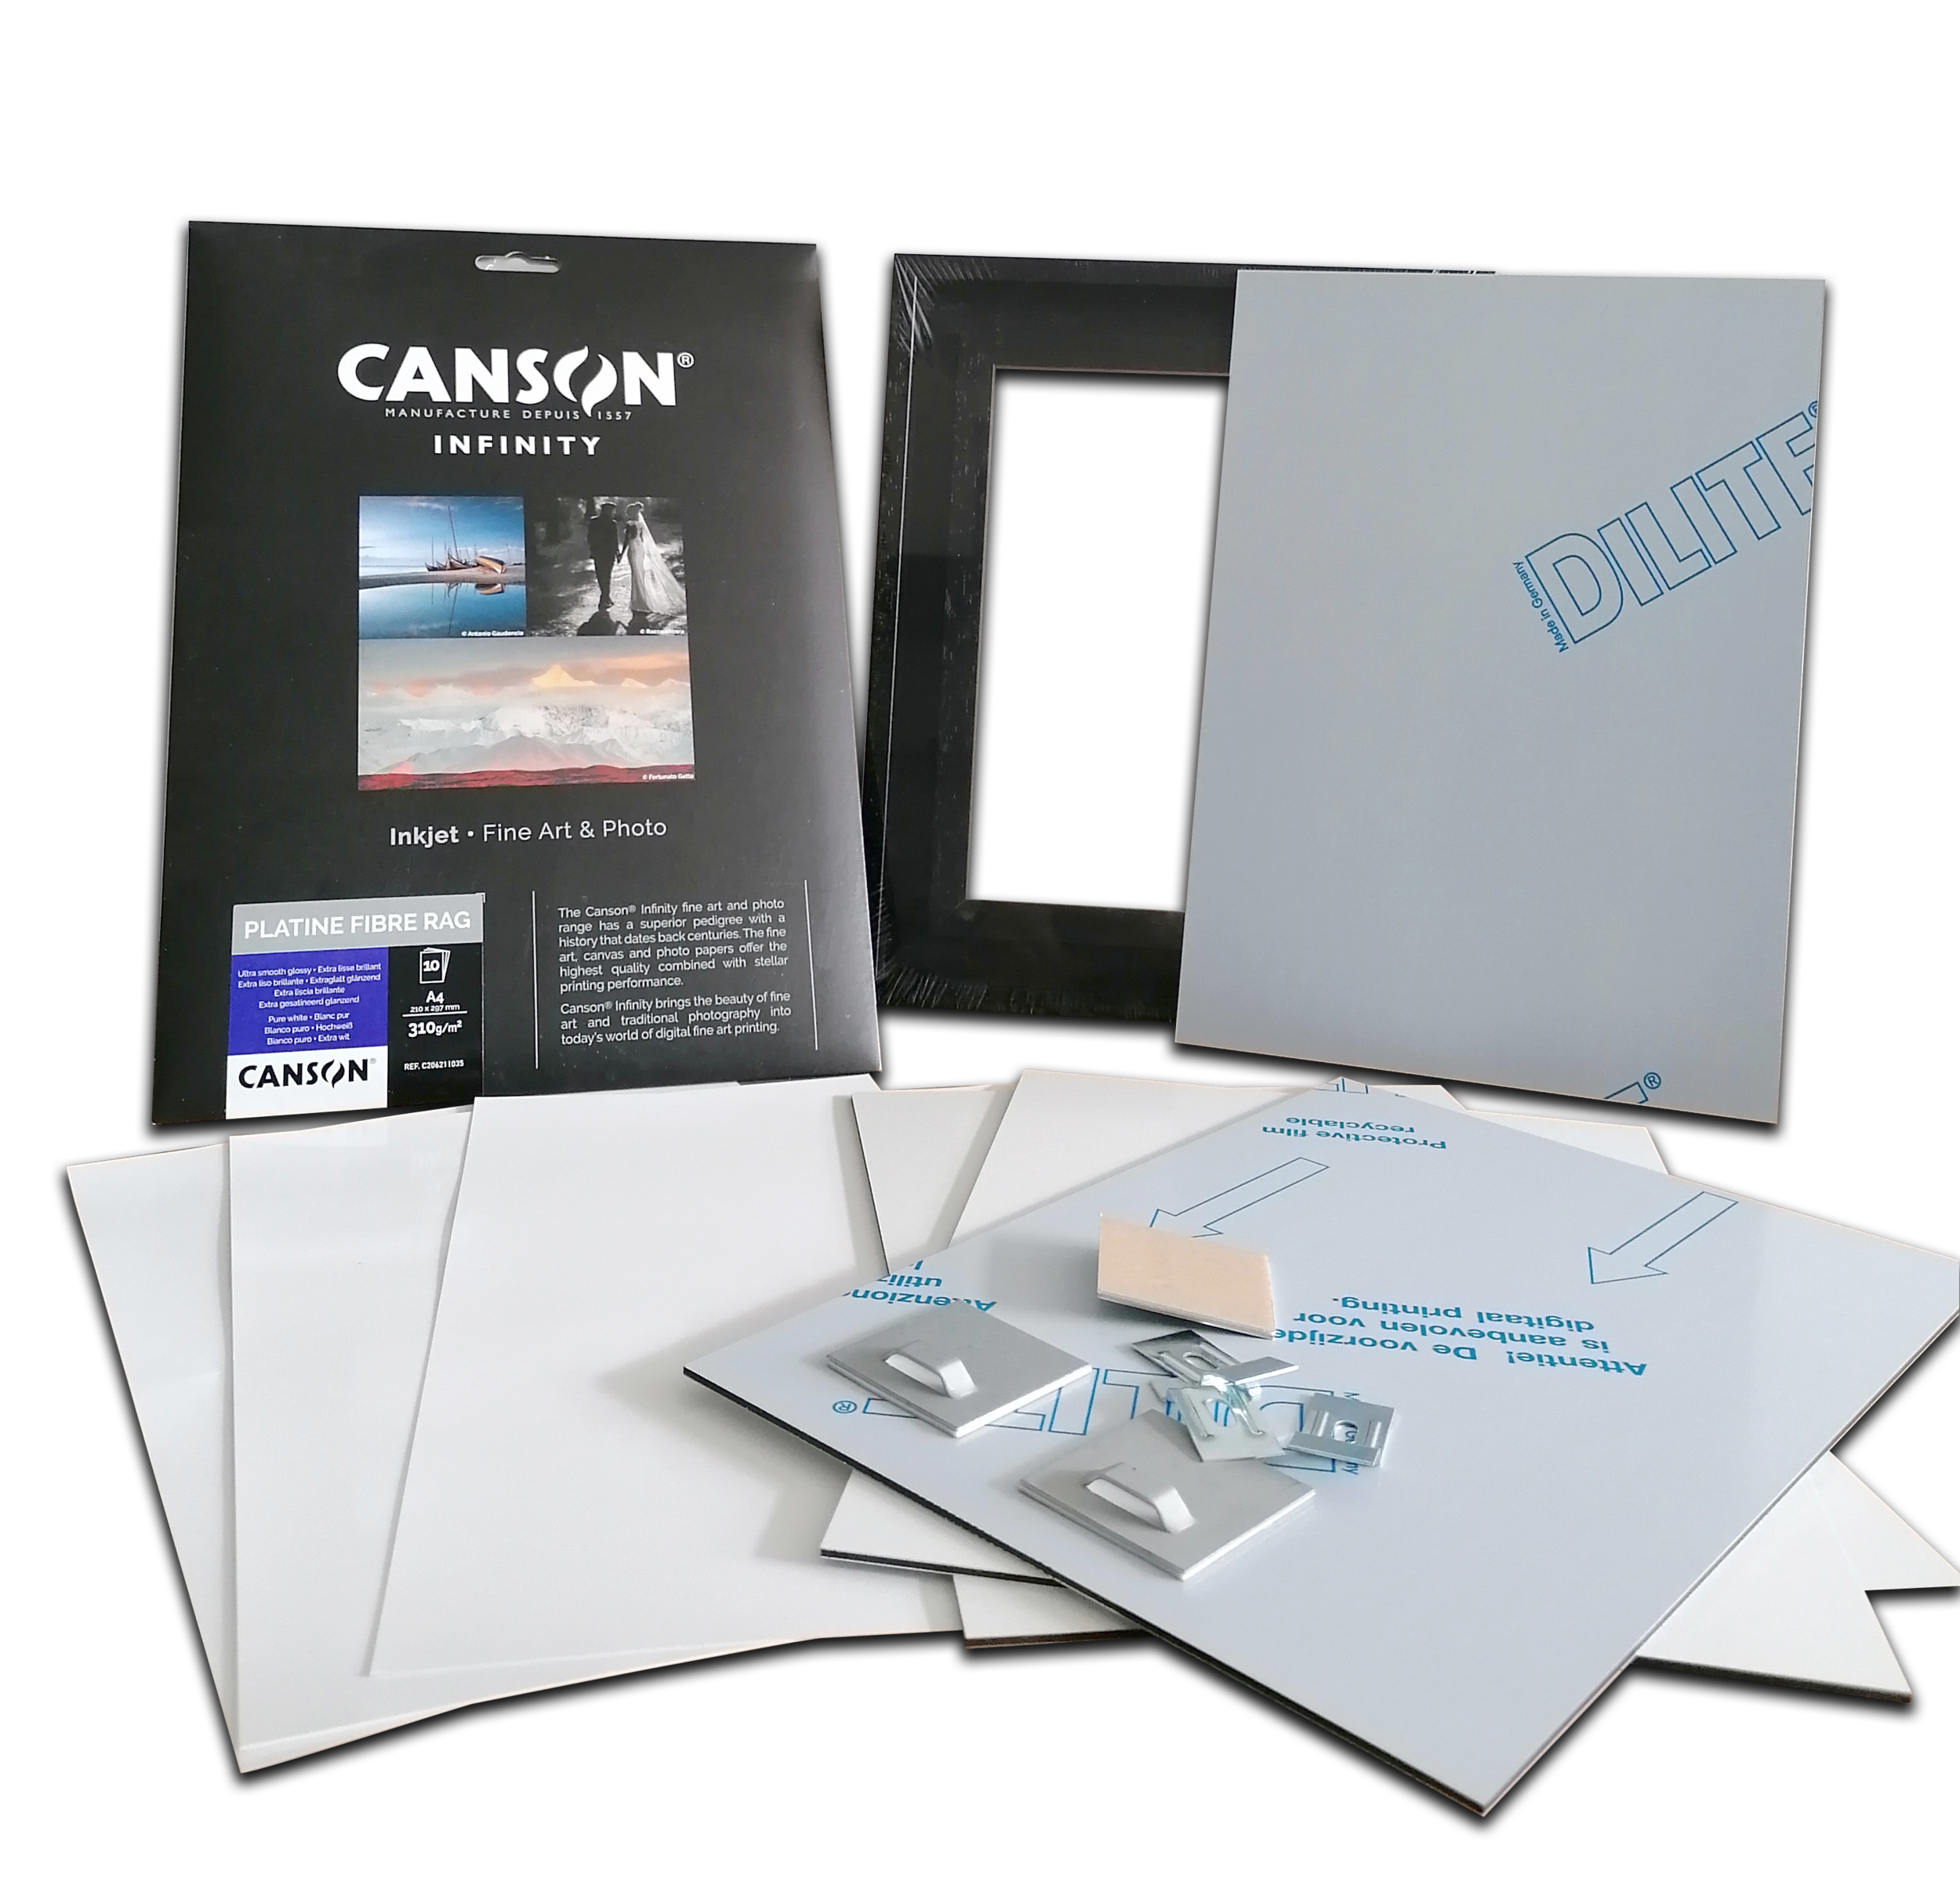 Canson Papier Photo Canson infinity Rag Photographique 310g A4 25 feuilles,papier photo 